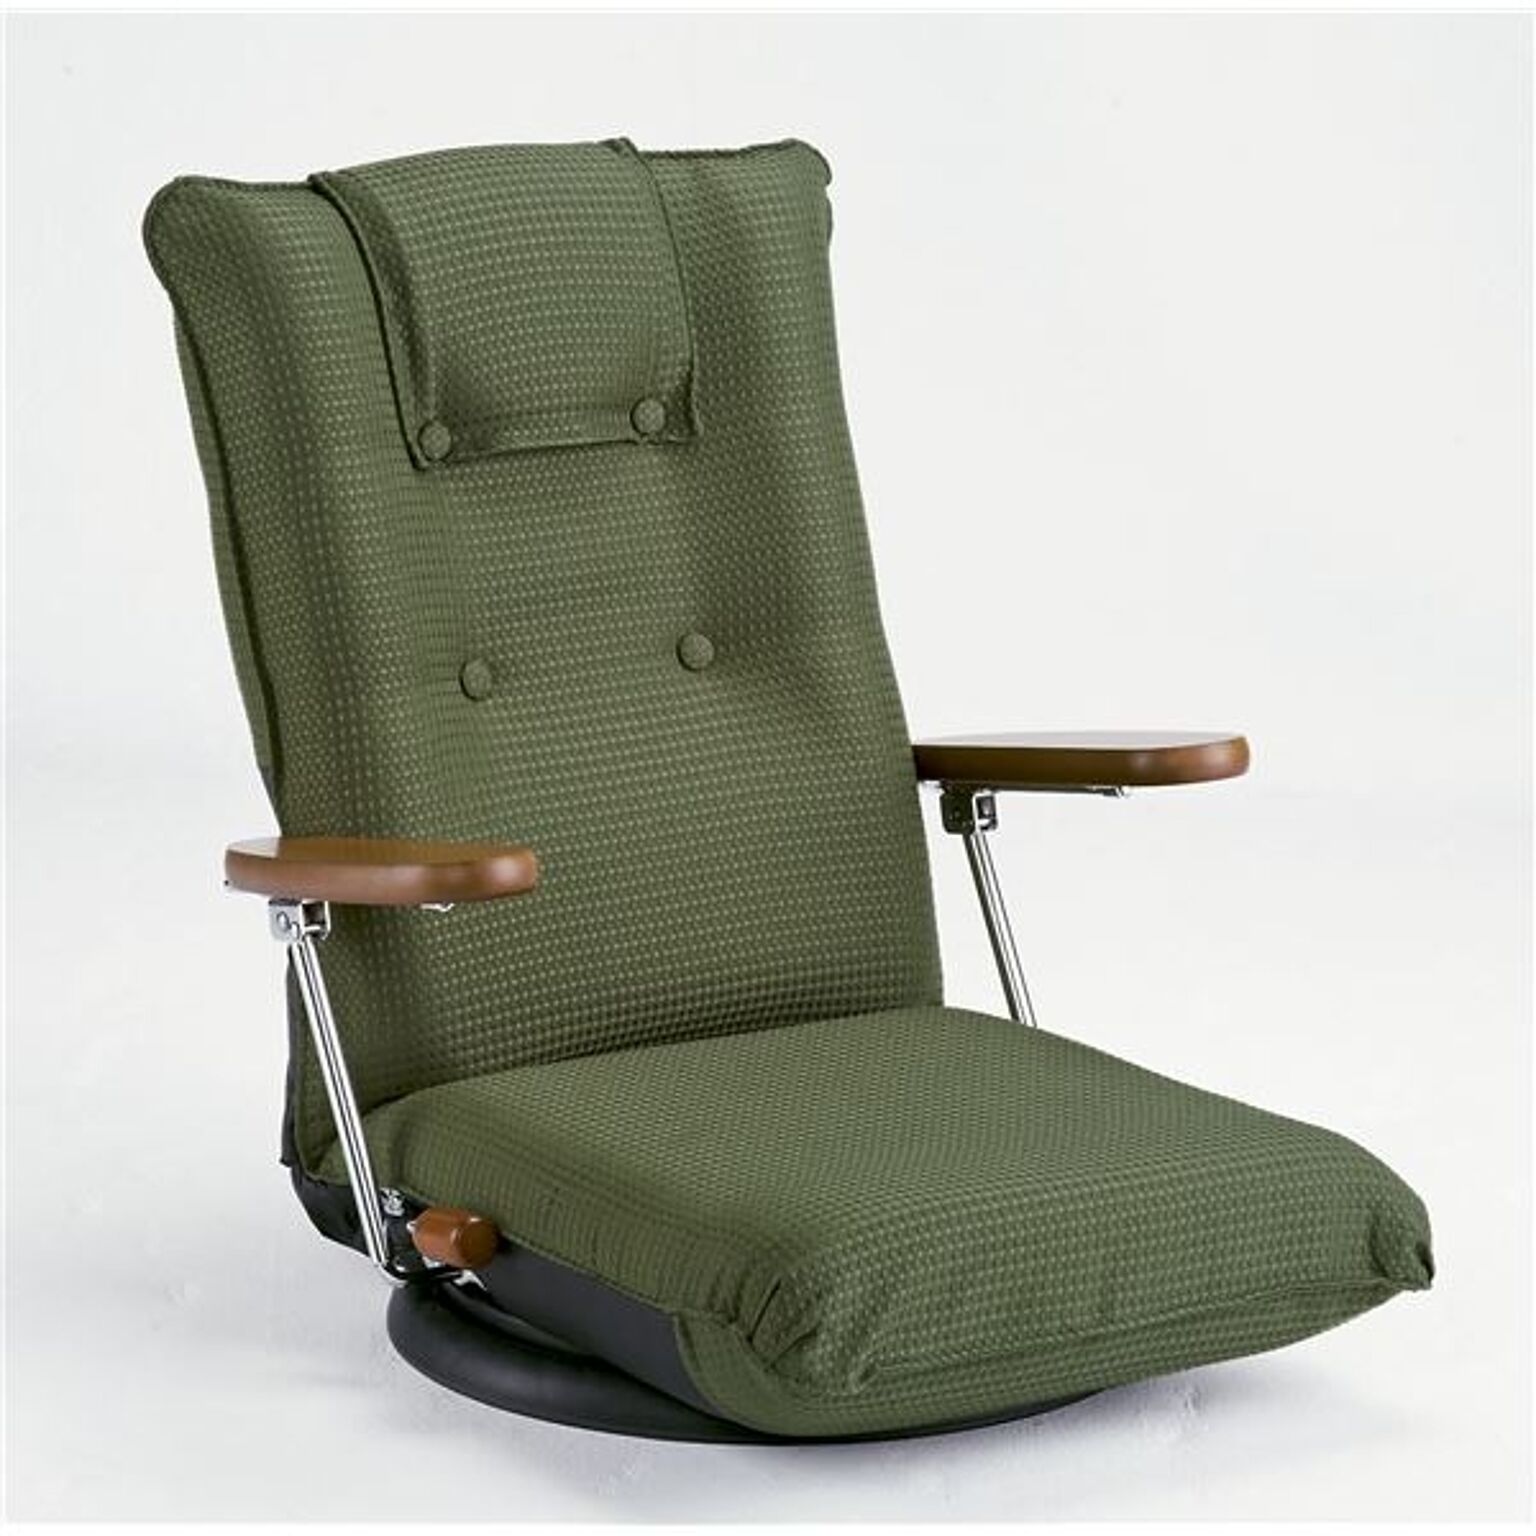 ハイバック回転座椅子(リクライニングチェア) 肘付き/ポンプ肘式 日本製 グリーン 【完成品】